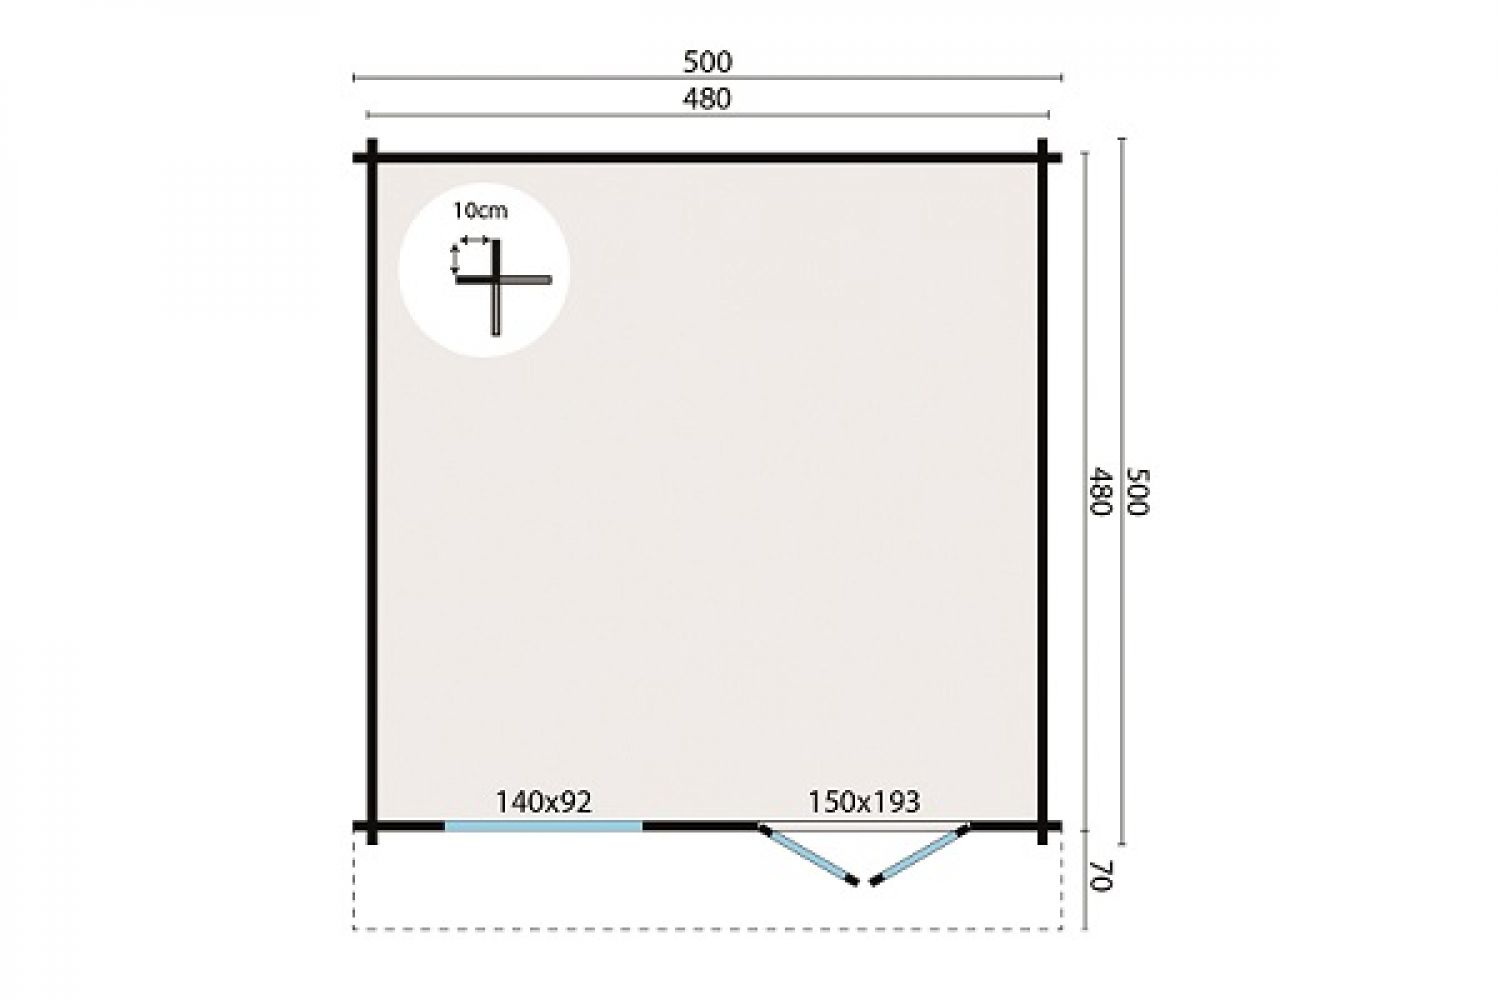 Blokhut Dingle 500x500 cm + luifel 70 cm plattegrond